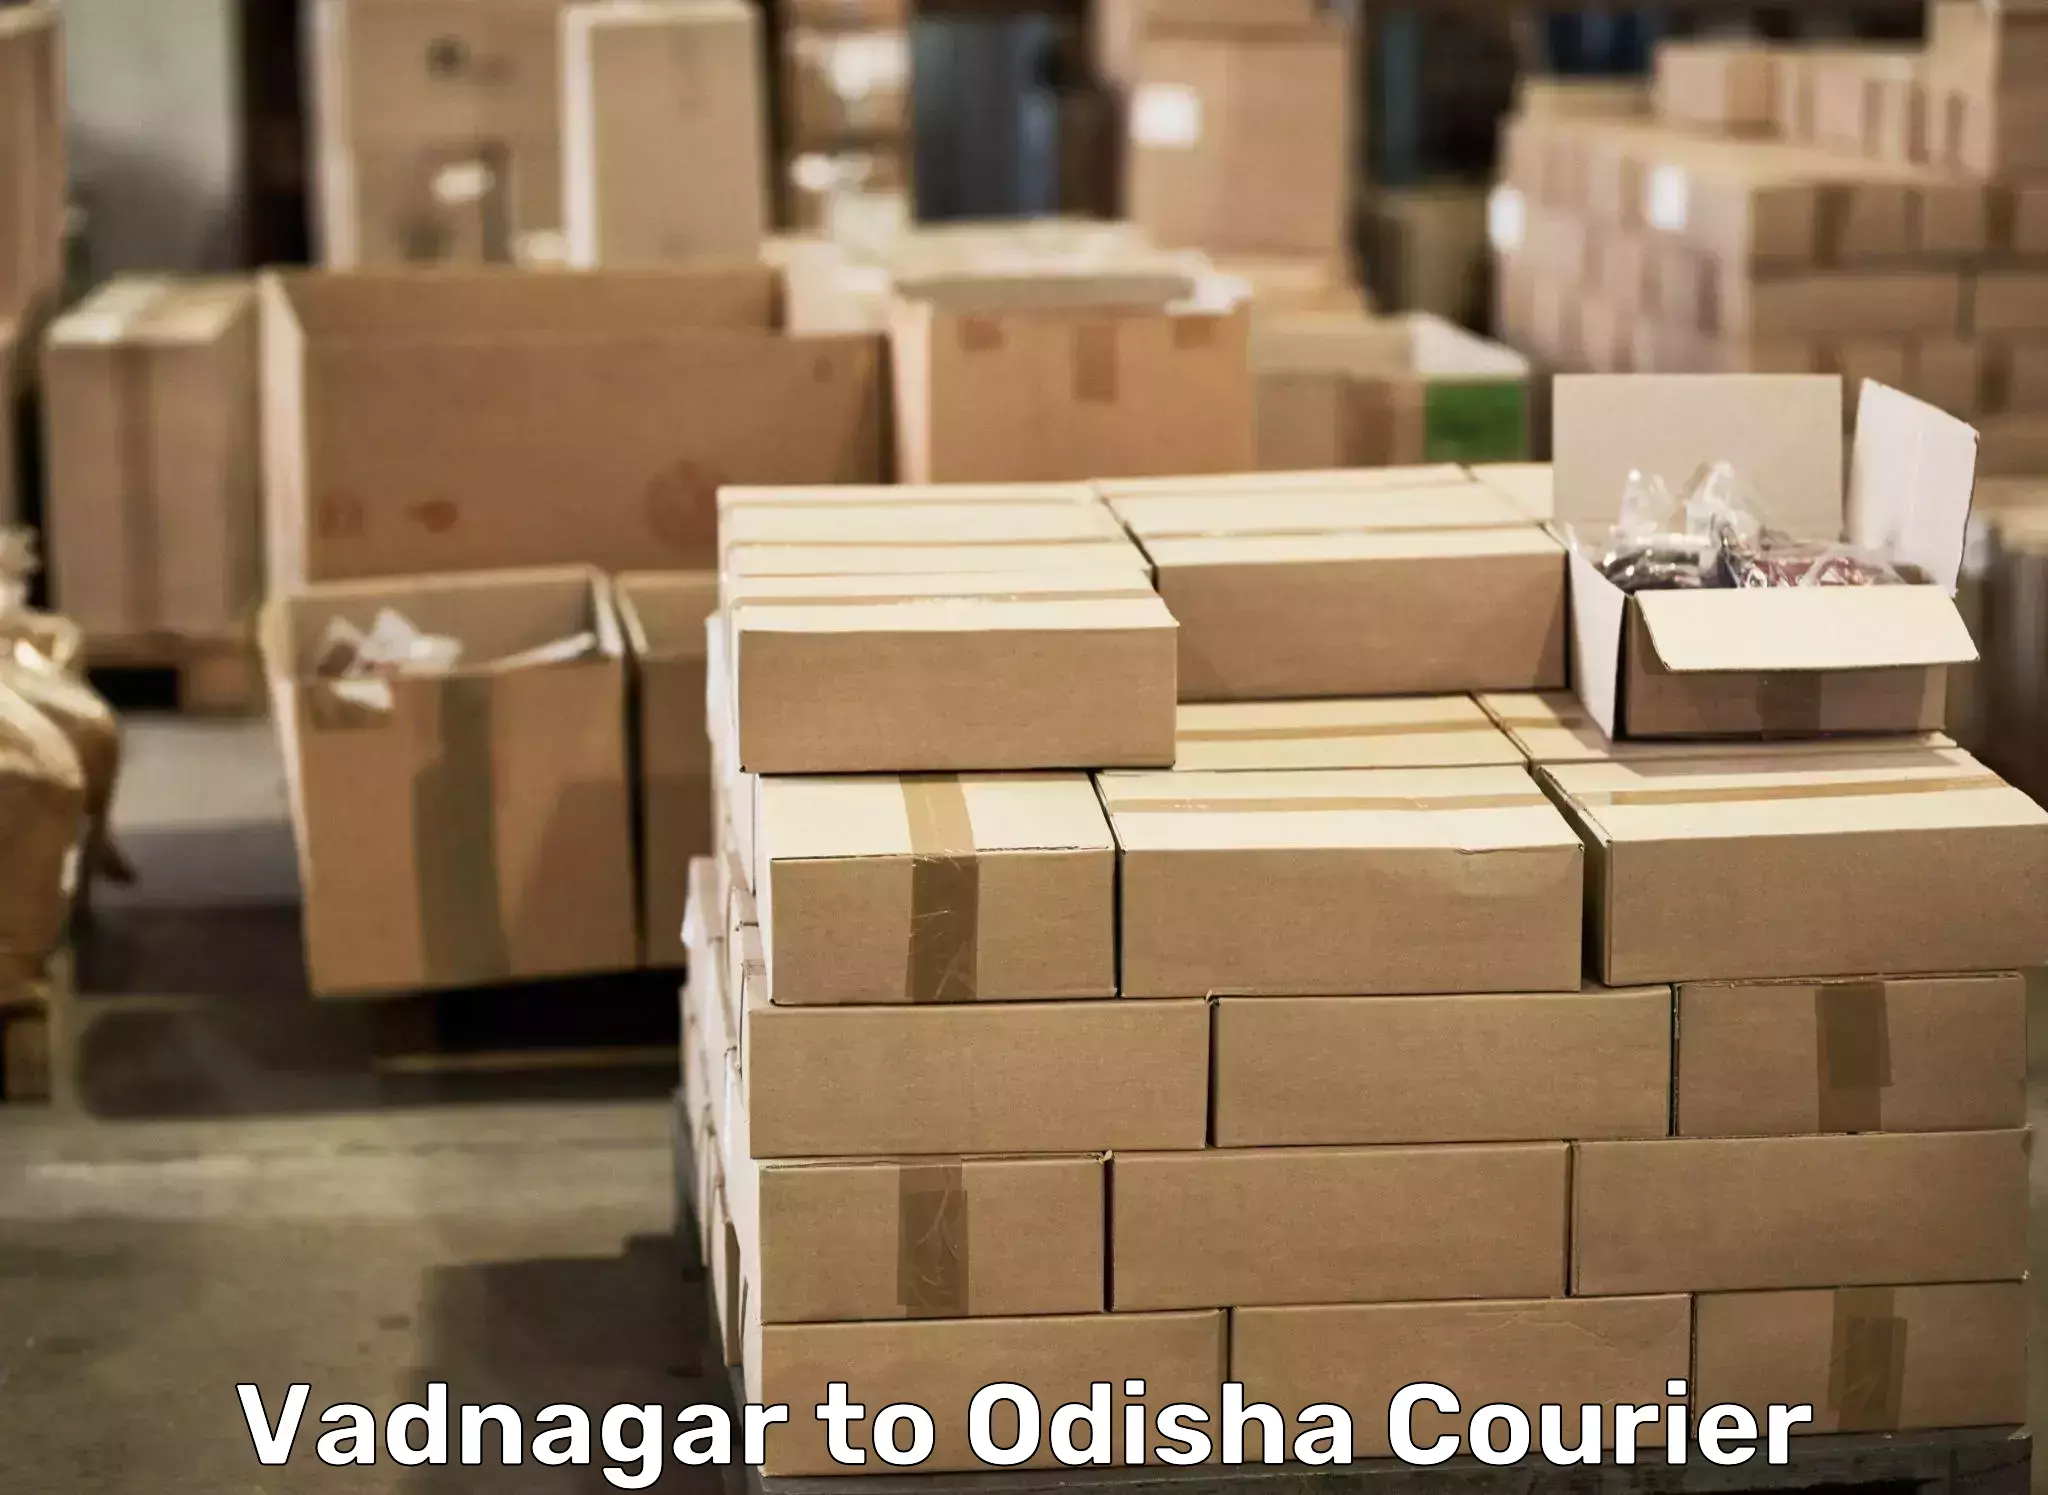 Furniture moving experts Vadnagar to Raj Berhampur